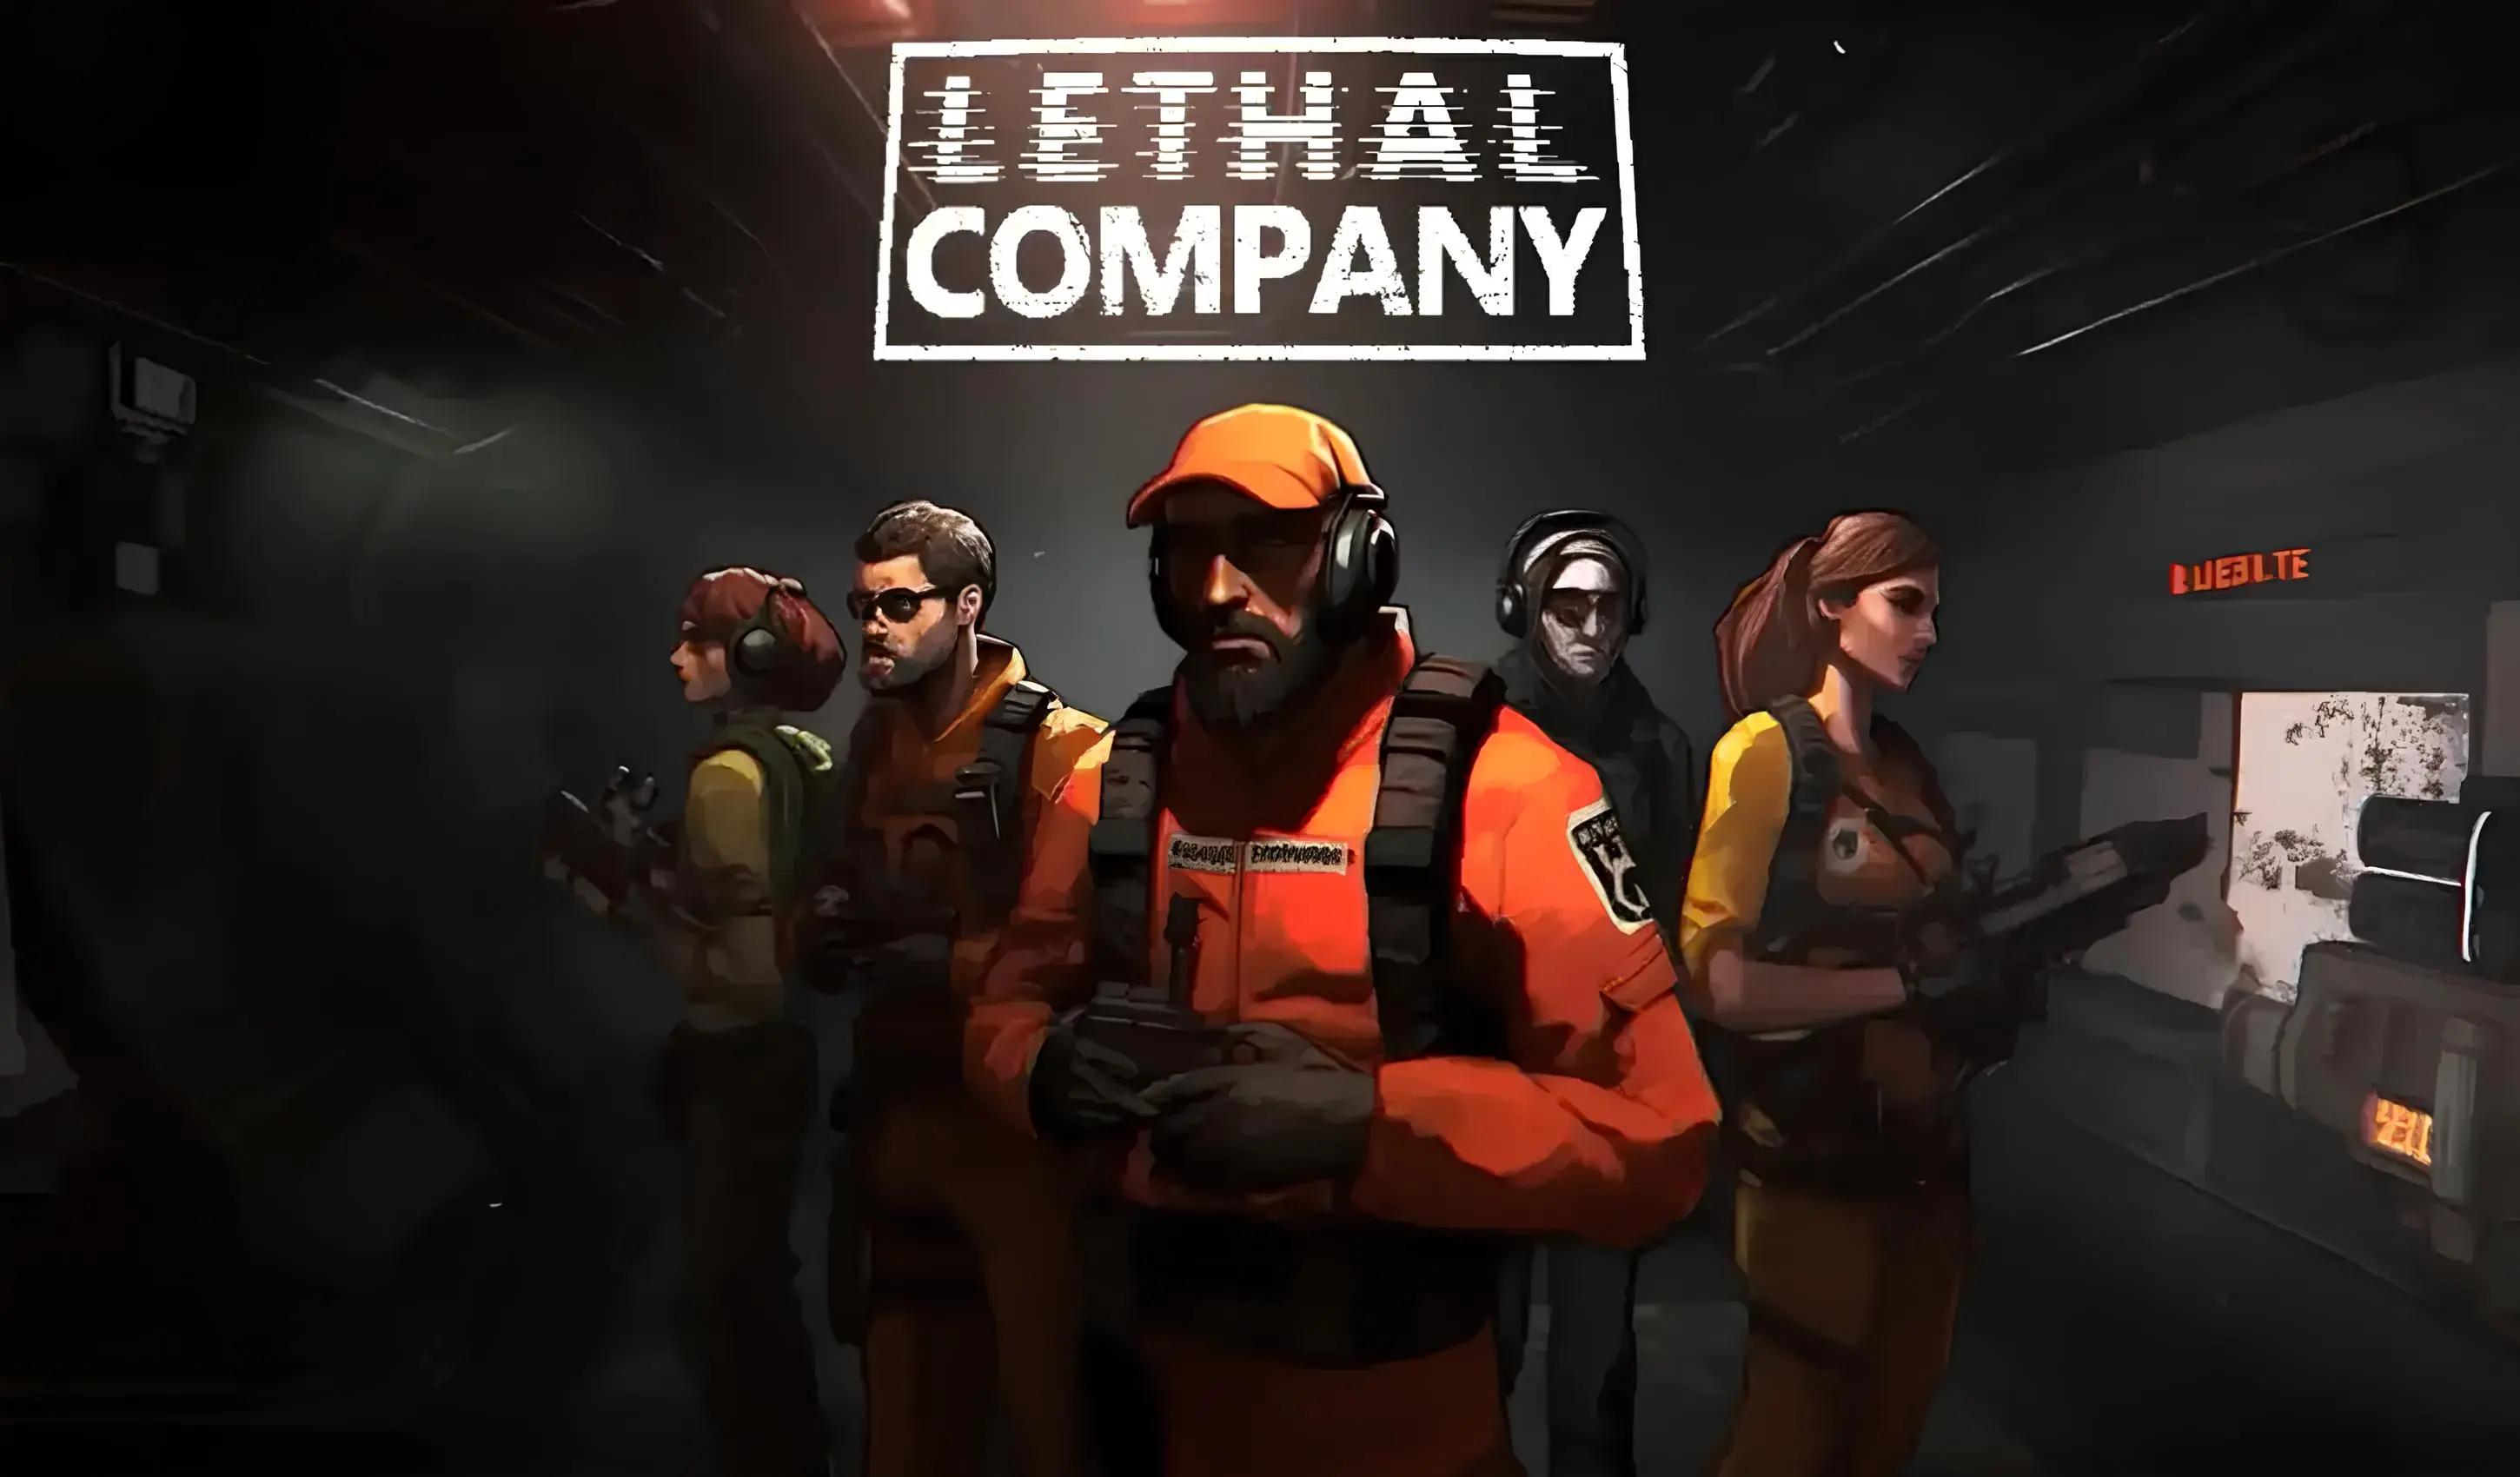 Lethal Company: ldrmek in Domu irket 